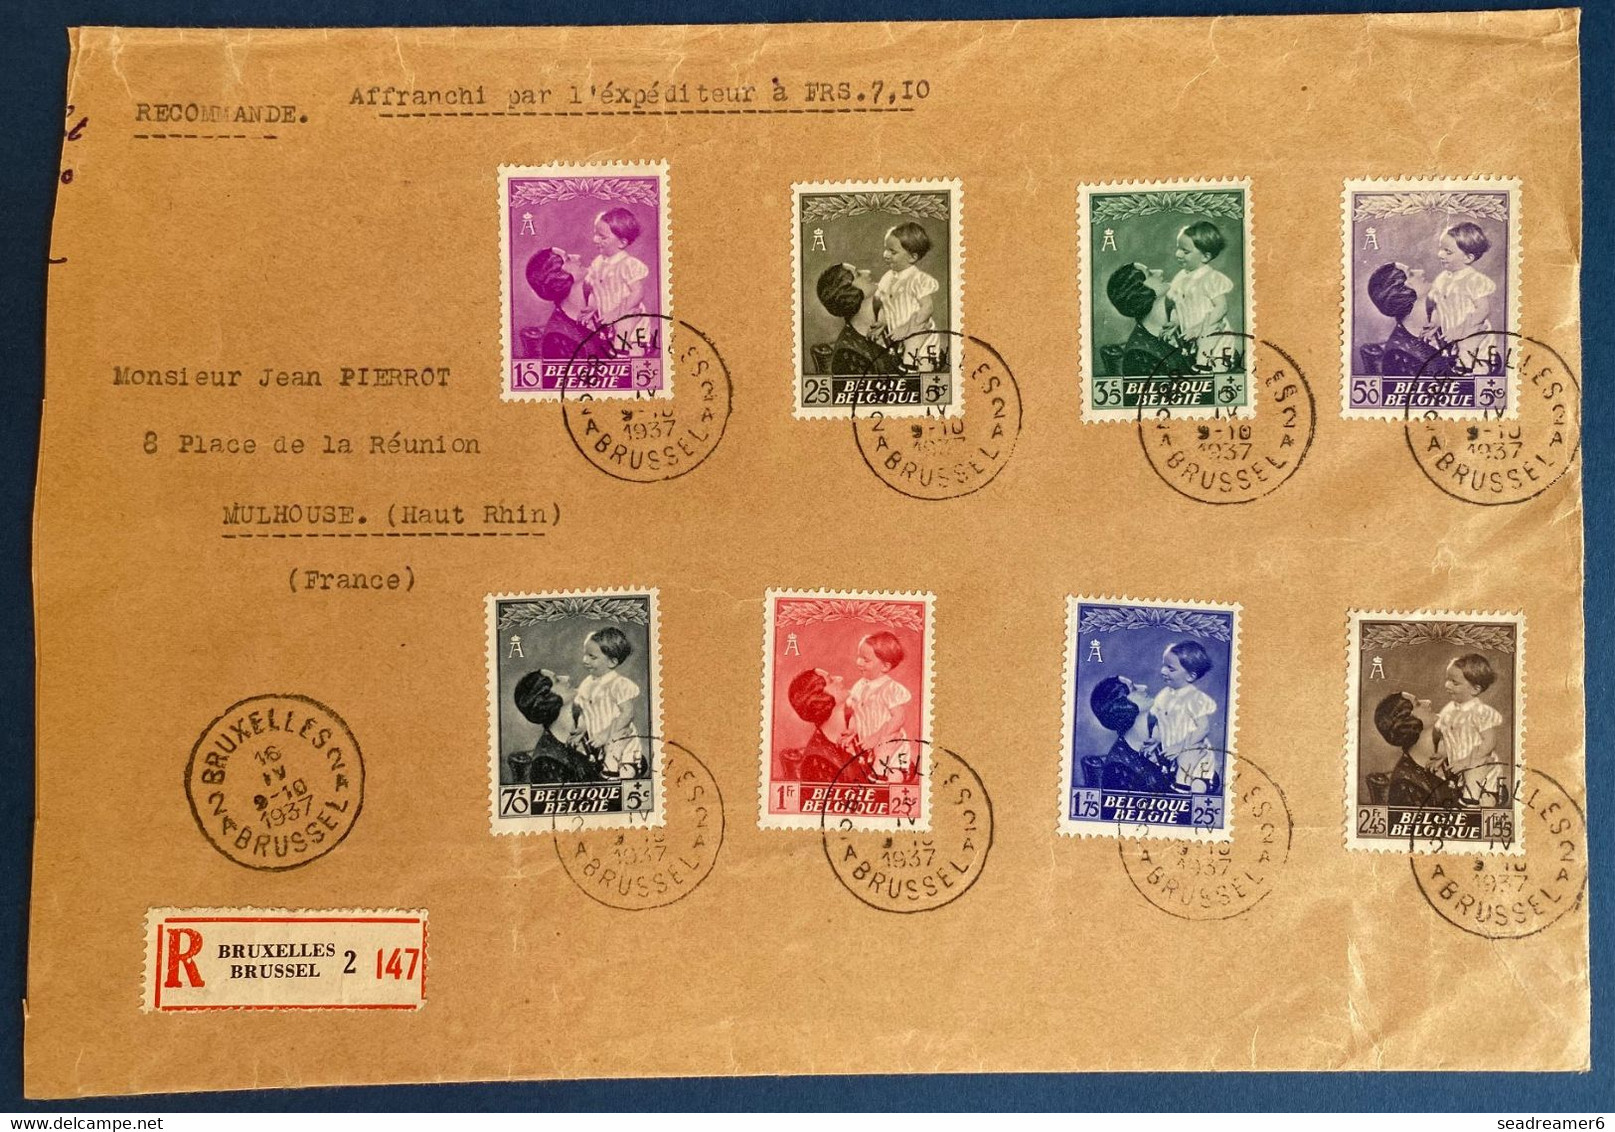 Belgique 6 lettres recommandées avec series completes des années 1936 à 1938 TTB